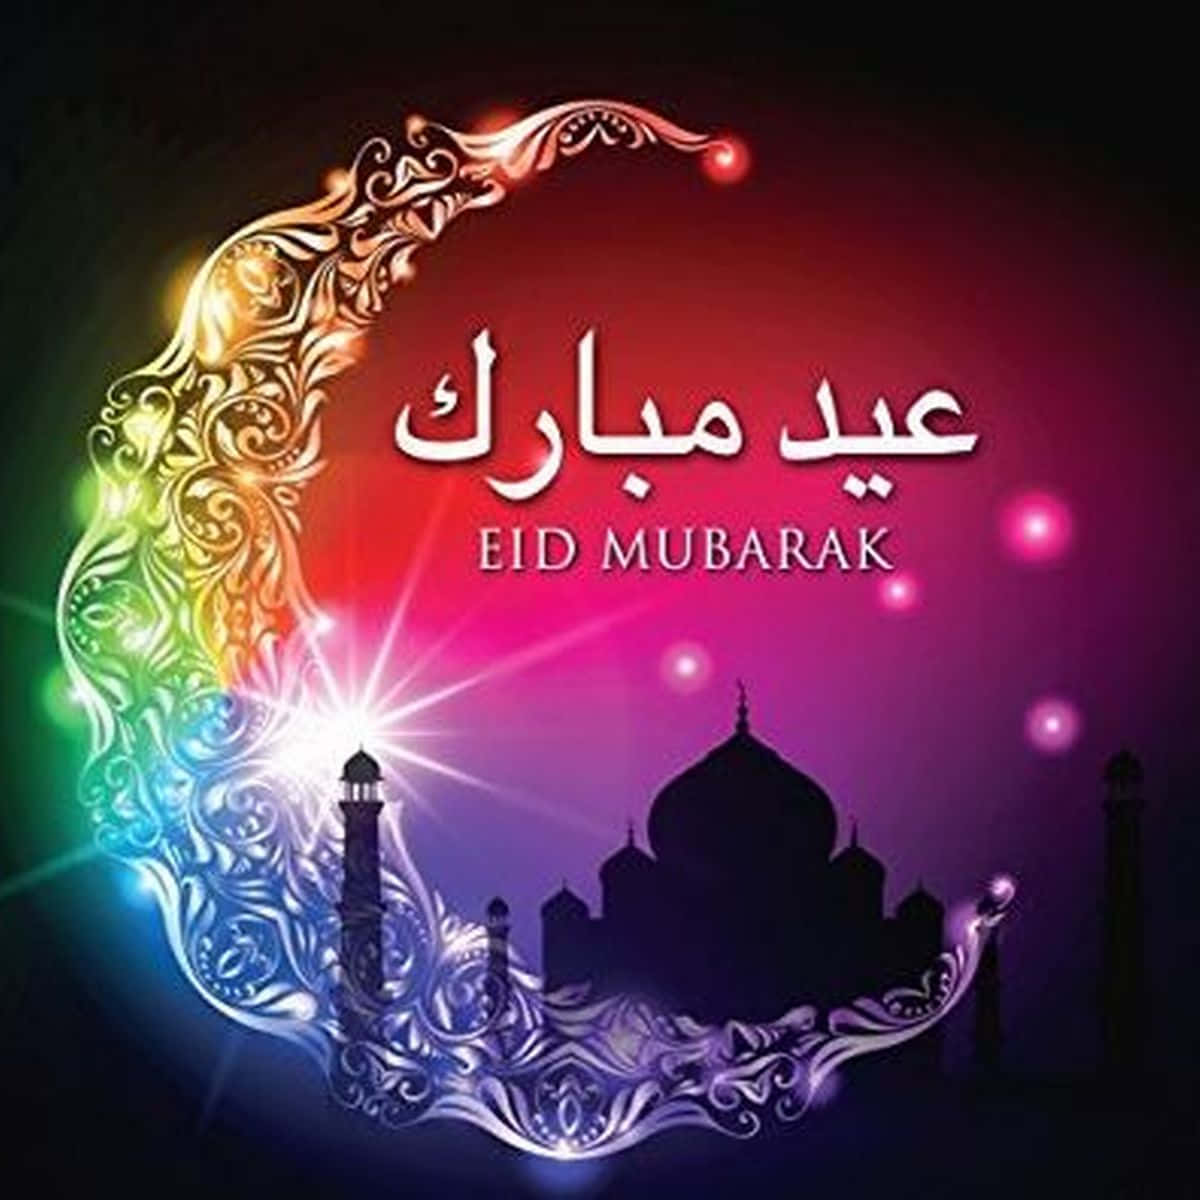 Ichwünsche Ihnen Und Ihren Lieben Ein Fröhliches Eid Mubarak, Voller Liebe, Freude Und Glück!